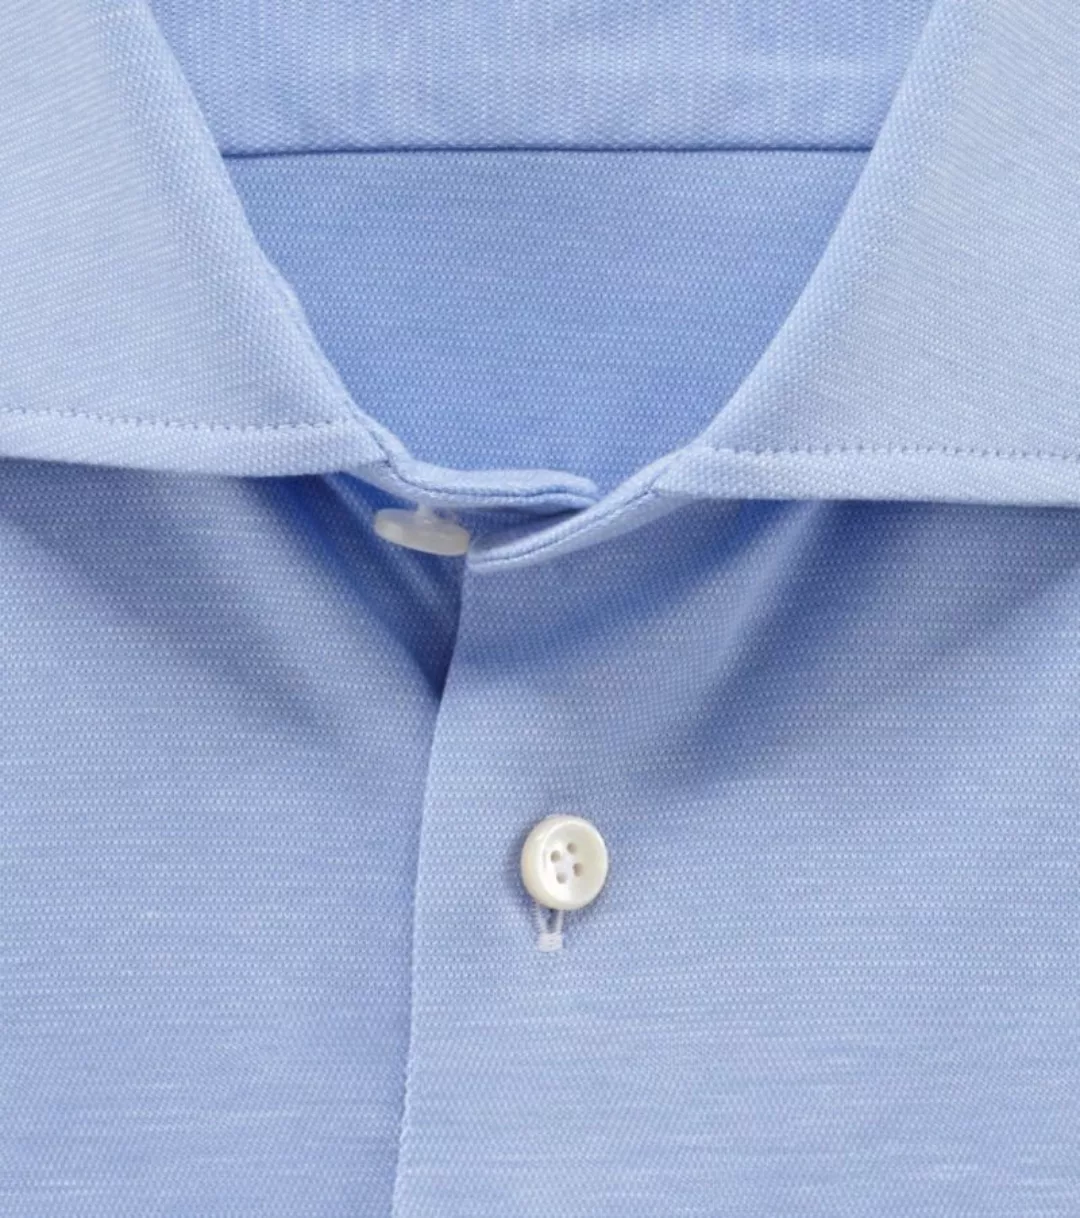 OLYMP Signature Hemd Jersey Hellblau - Größe 38 günstig online kaufen